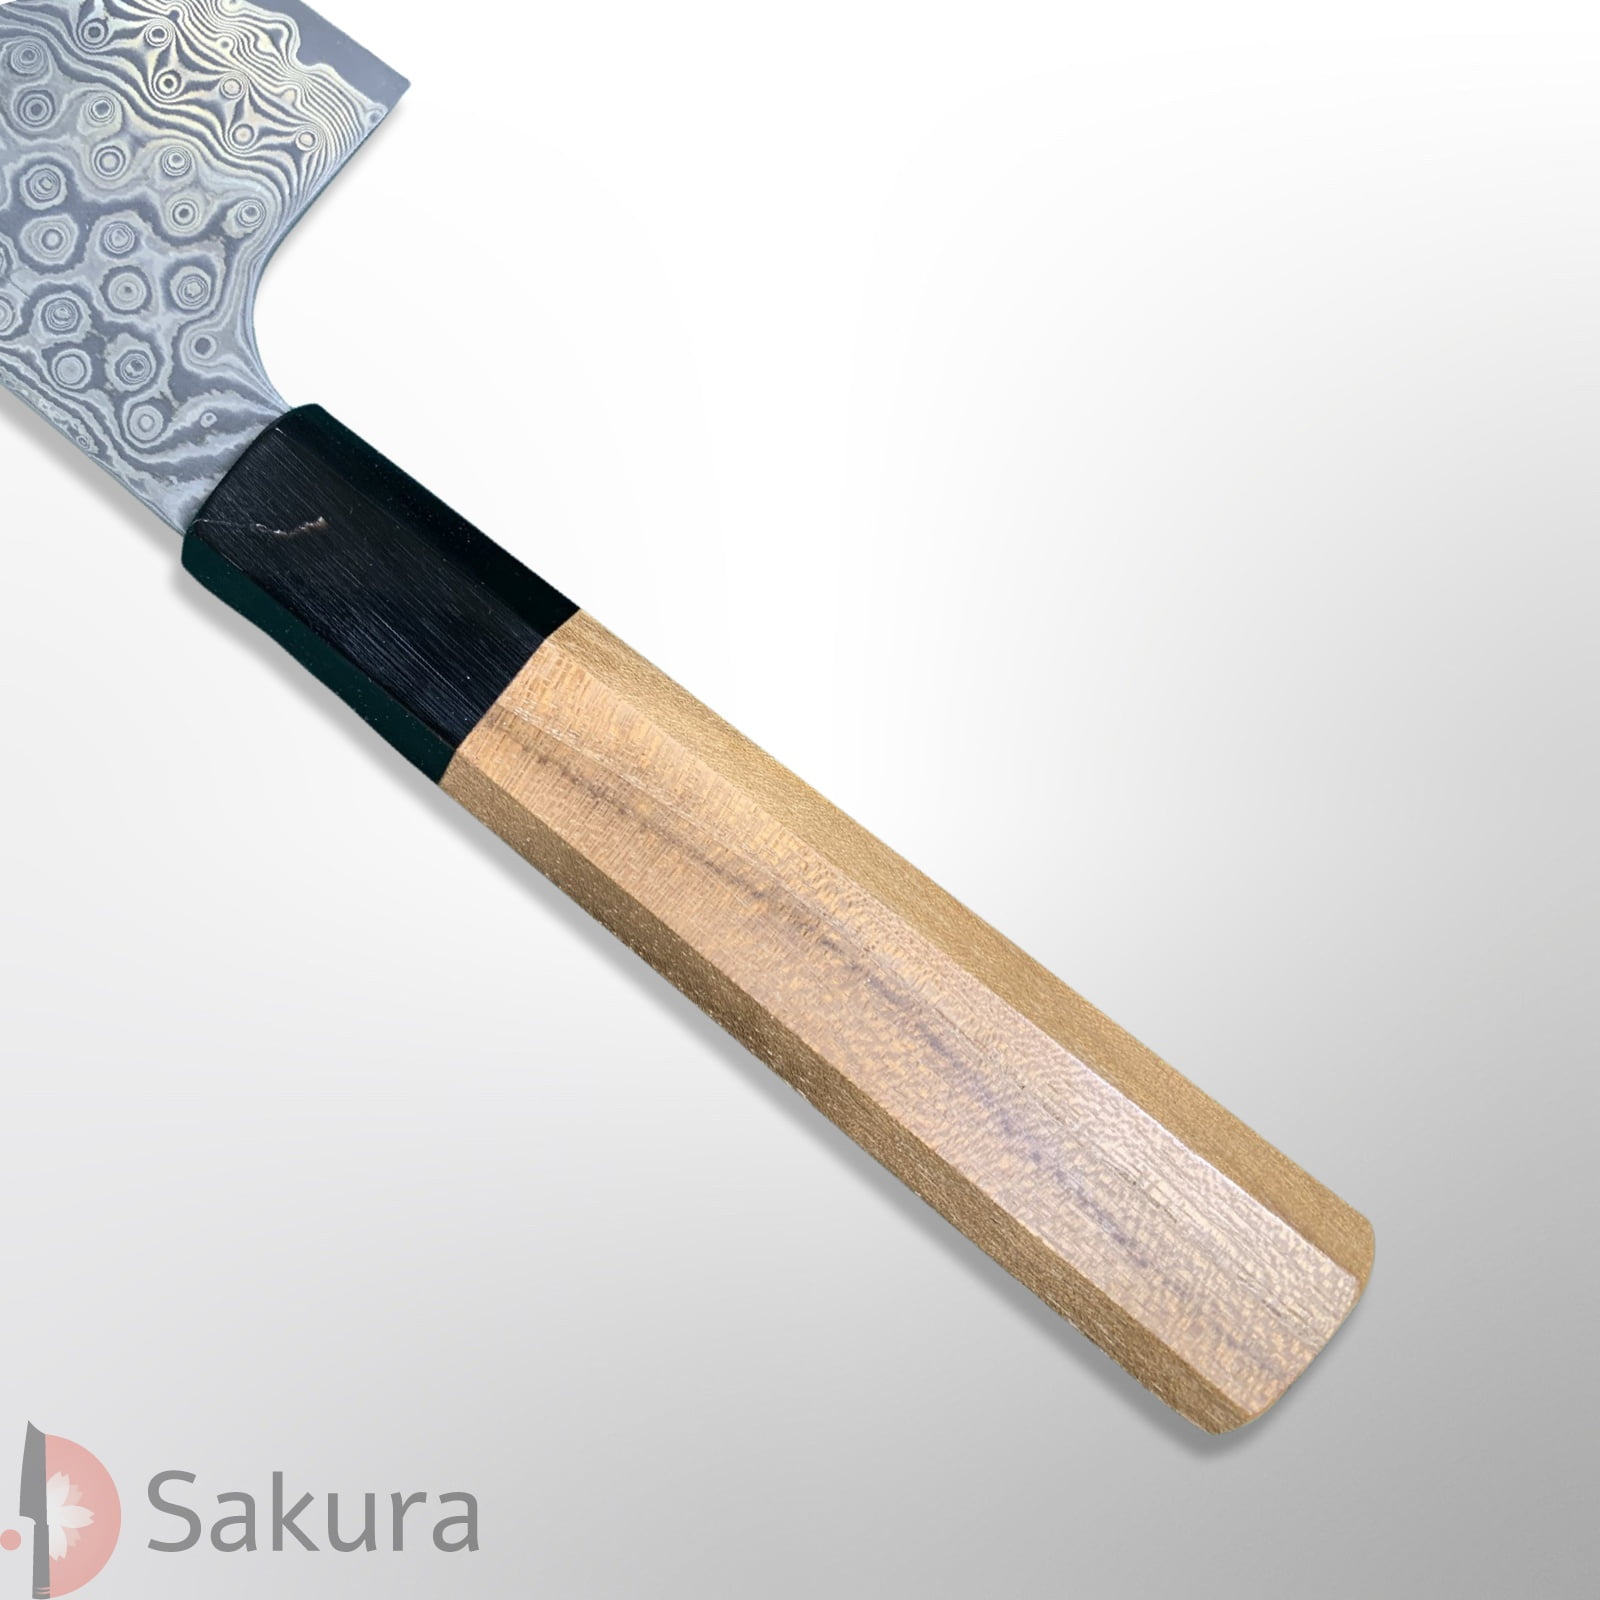 סכין ירקות קִּירִיצוּקֶה נַקִירִי 170מ״מ מחושלת בעבודת יד 49 שכבות: פלדת פחמן יפנית מתקדמת R2/SG2  גימור דמשק שחורה Kurosome בנויה 48 שכבות ניקל ונחושת ניגארה יפן SKNIGASG2DAMNAKIRI16